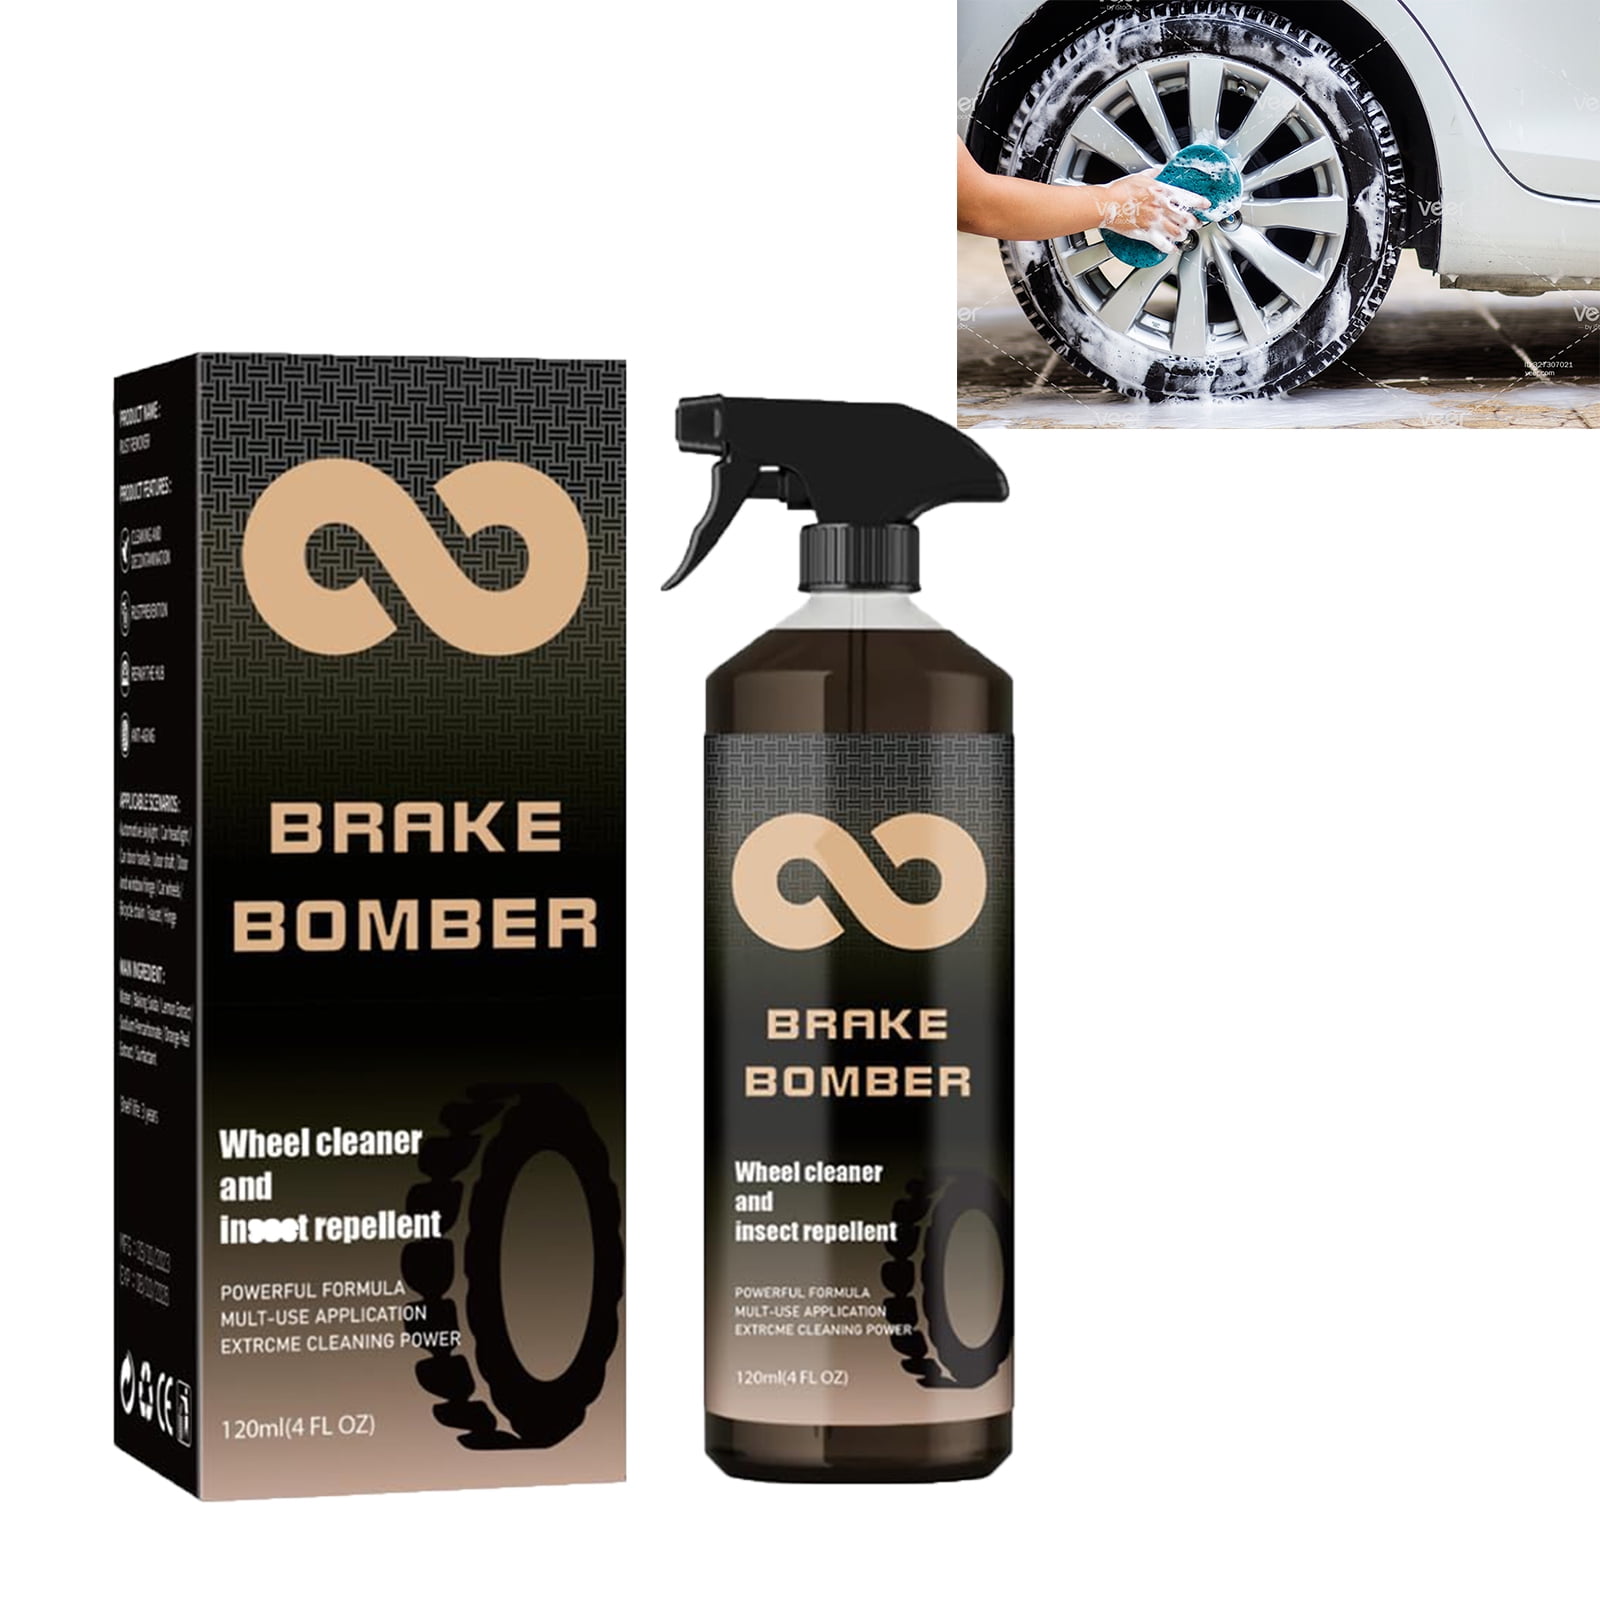 Stealth Brake Bomber, Brake Bomber Wheel Cleaner, Brake Bomber